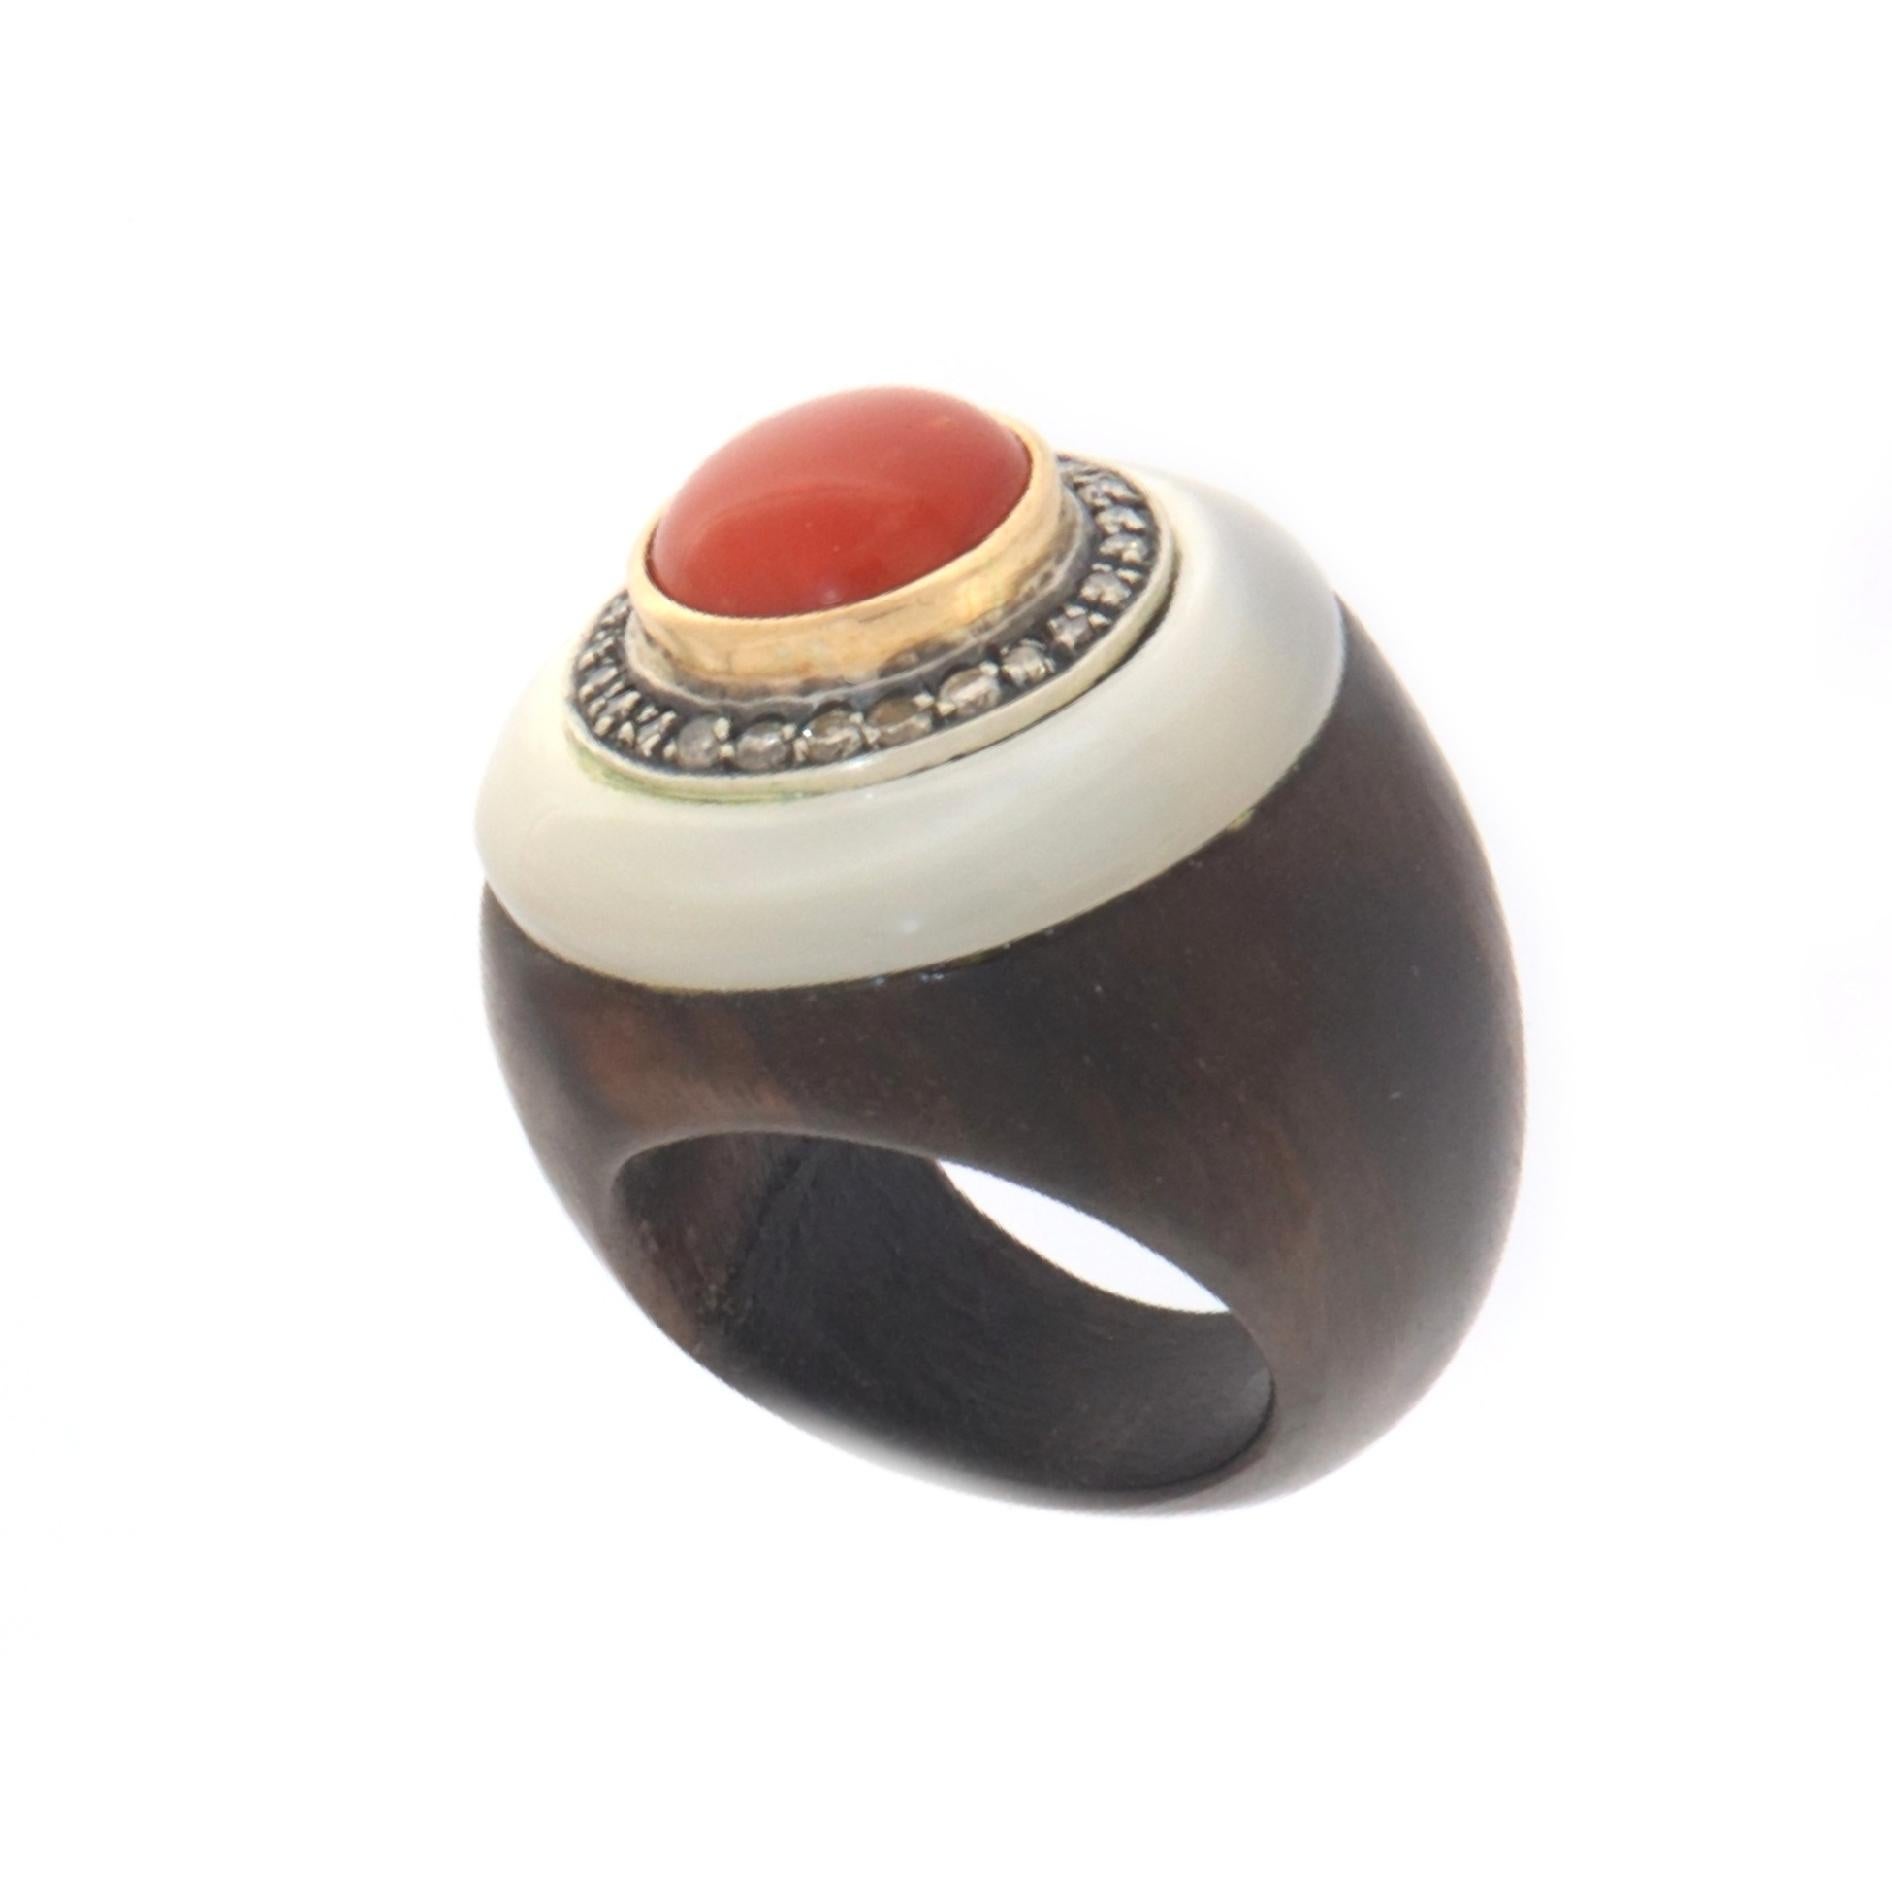 Der Stiel dieses besonderen Rings wurde ganz aus Holz gefertigt, im oberen Teil wurde ein kreisförmiges Perlmutt angebracht, das einen kleinen silbernen Kreis trägt, in dem Diamanten gefasst sind, die wiederum einen Knopf aus roter Naturkoralle